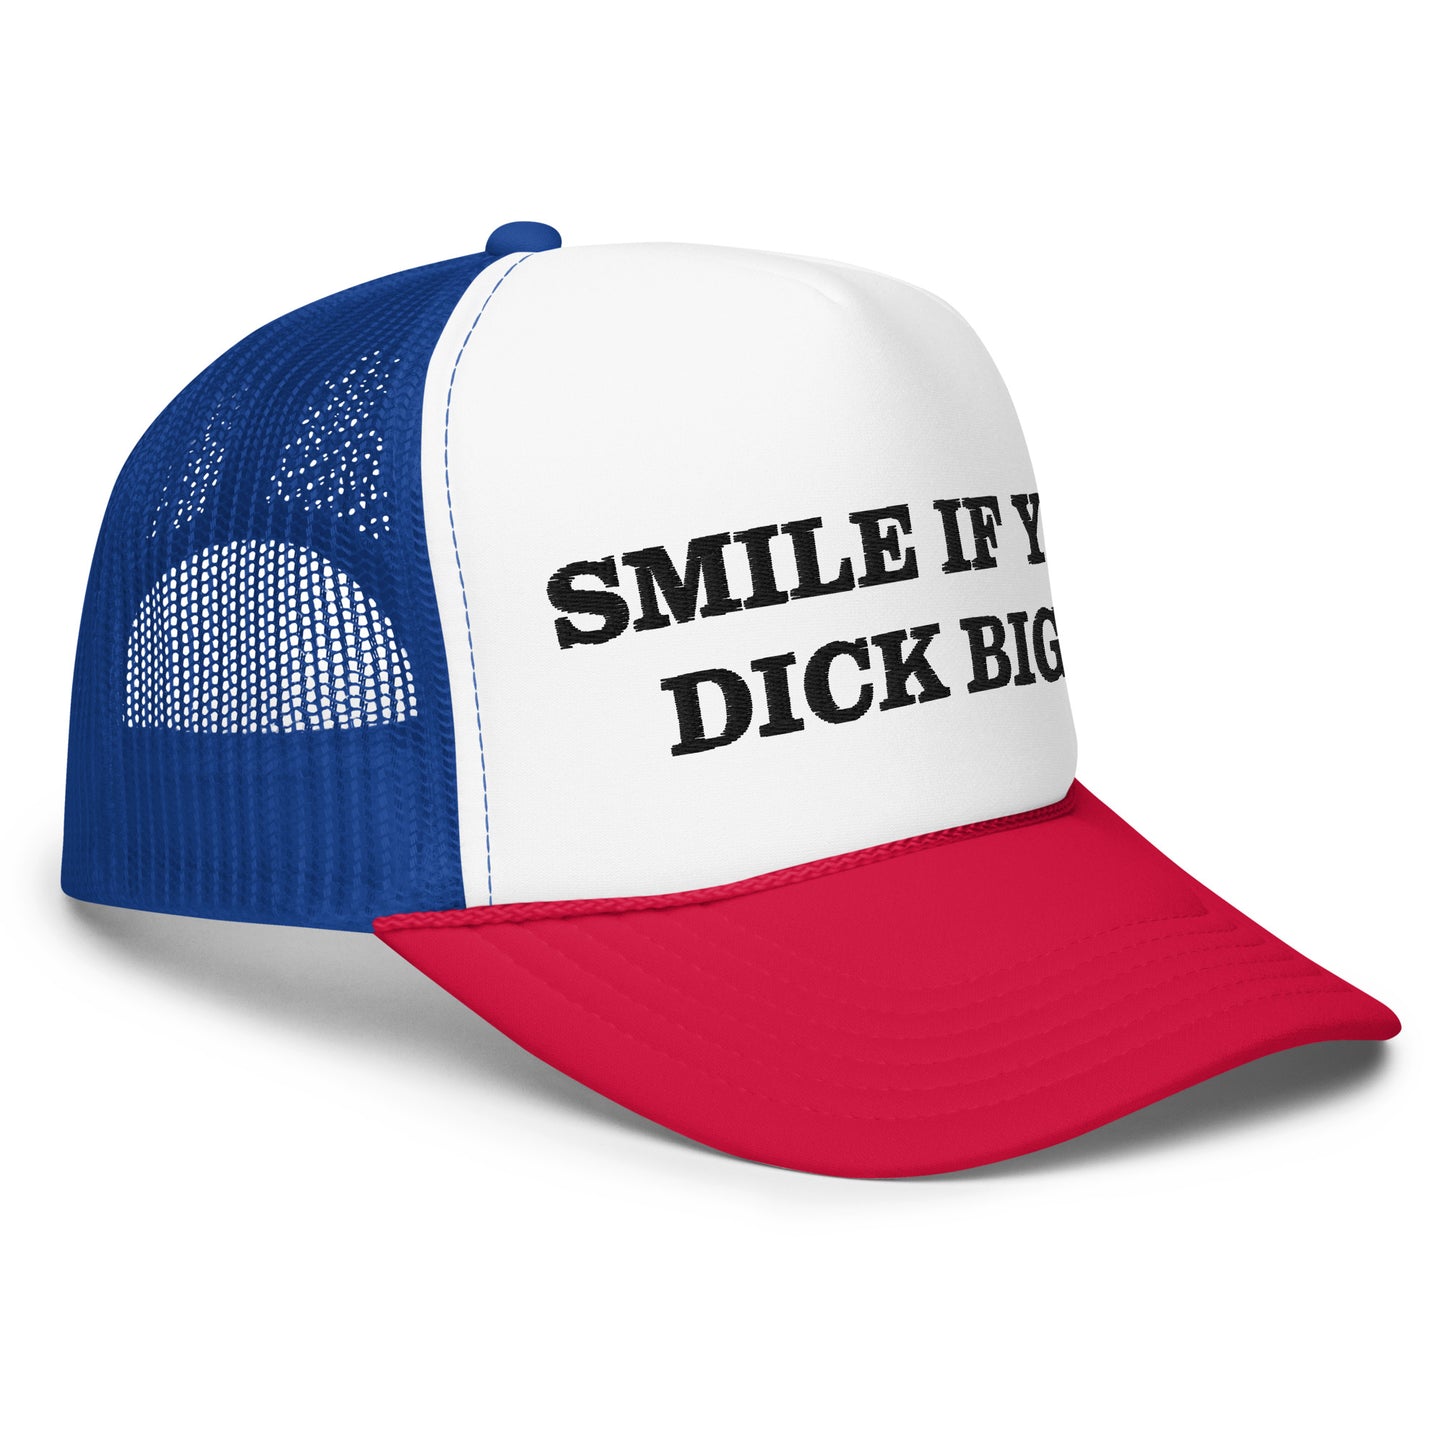 if yo dick big hat